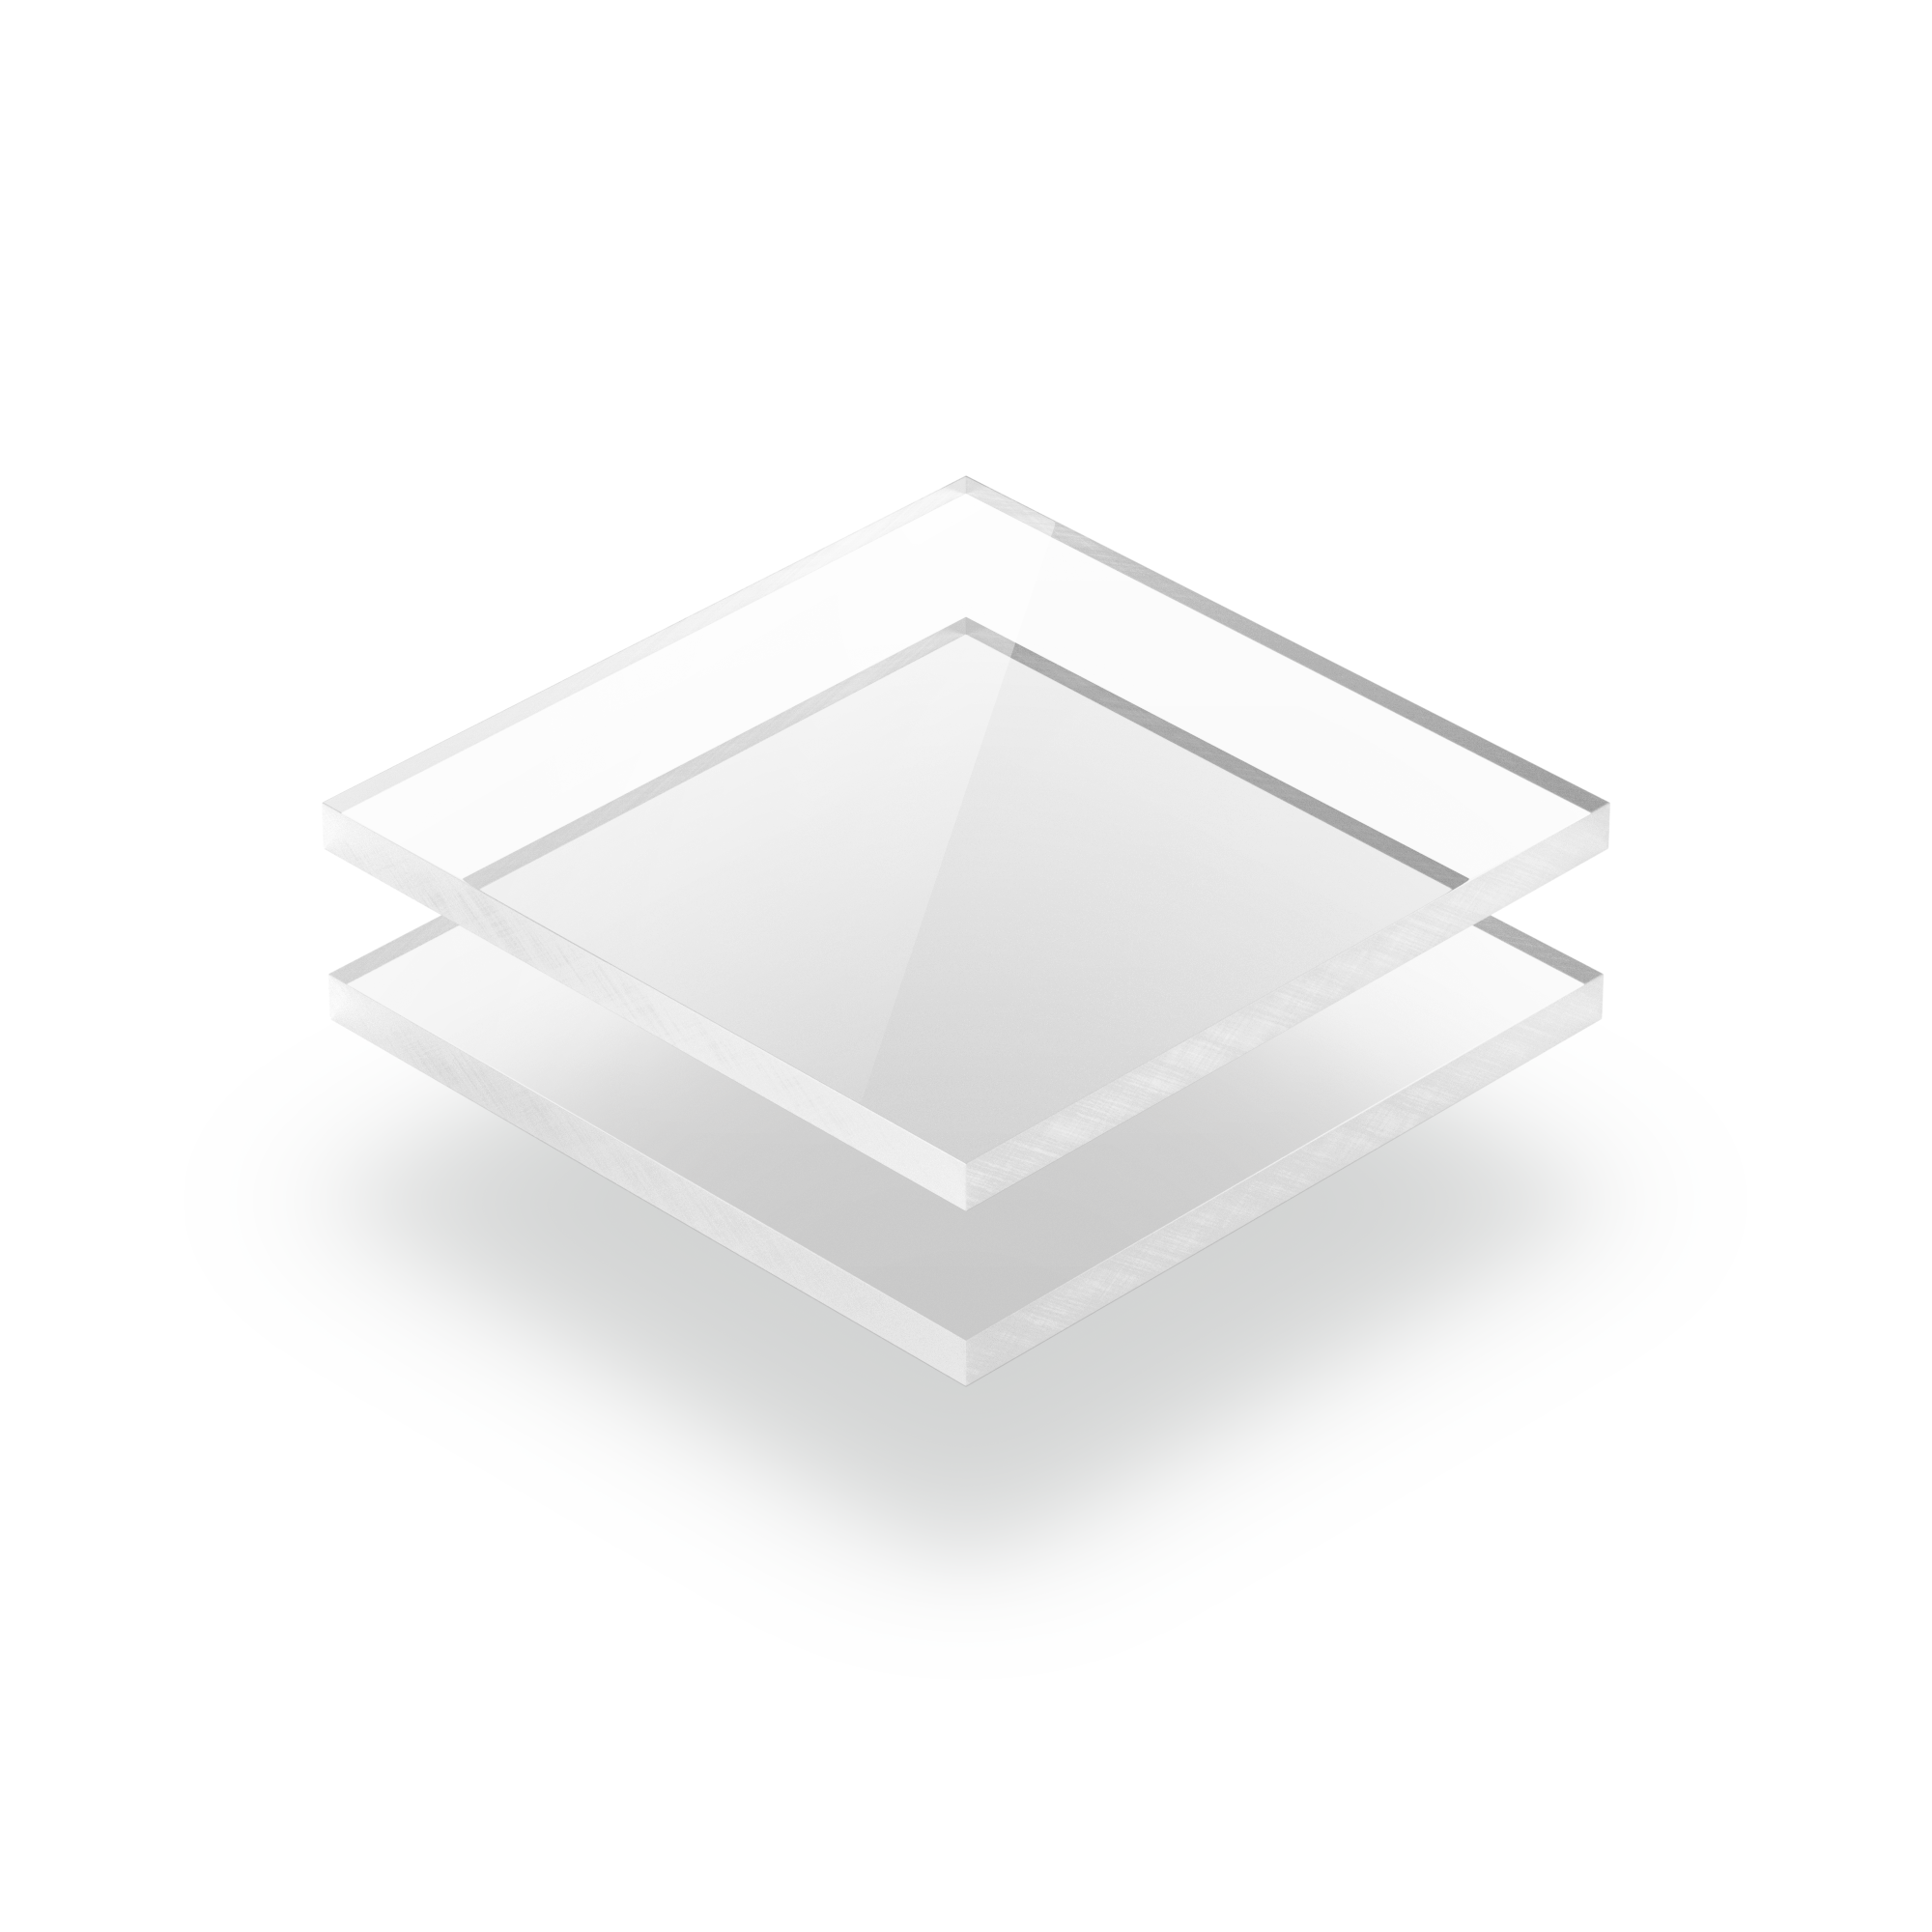 Acryl XT-Platte 6 mm DIN A4 297mm x 210mm Zuschnitt Kunststoffglas transparent 